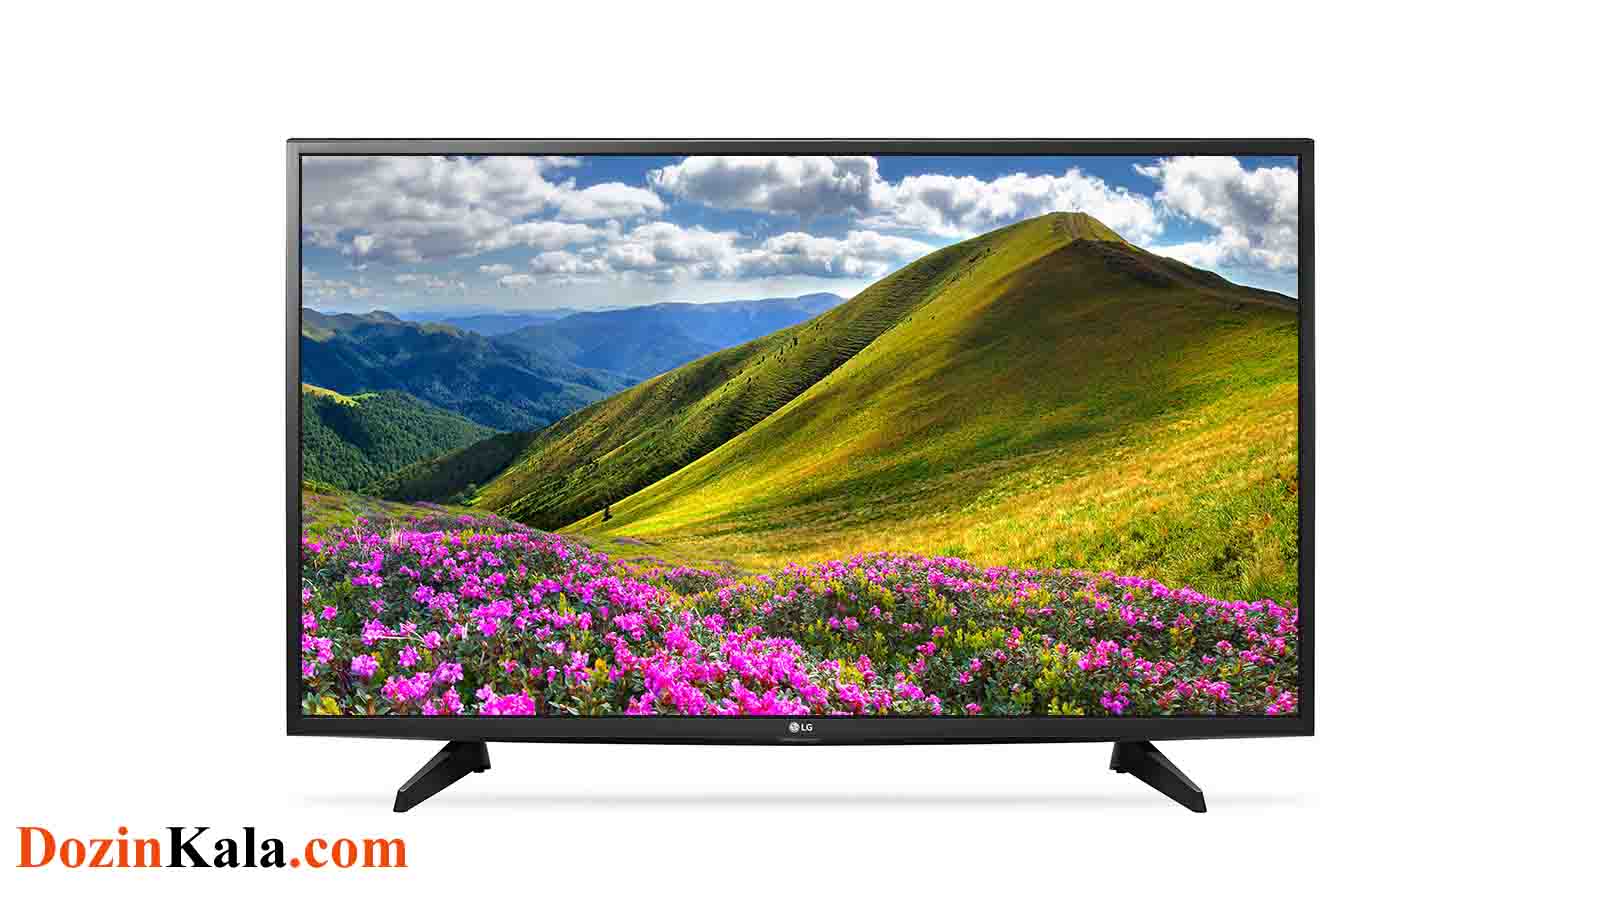 قیمت و خرید تلویزیون فول اچ دی ال جی مدل lg 49lj510v در فروشگاه اینترنتس دوزین کالا